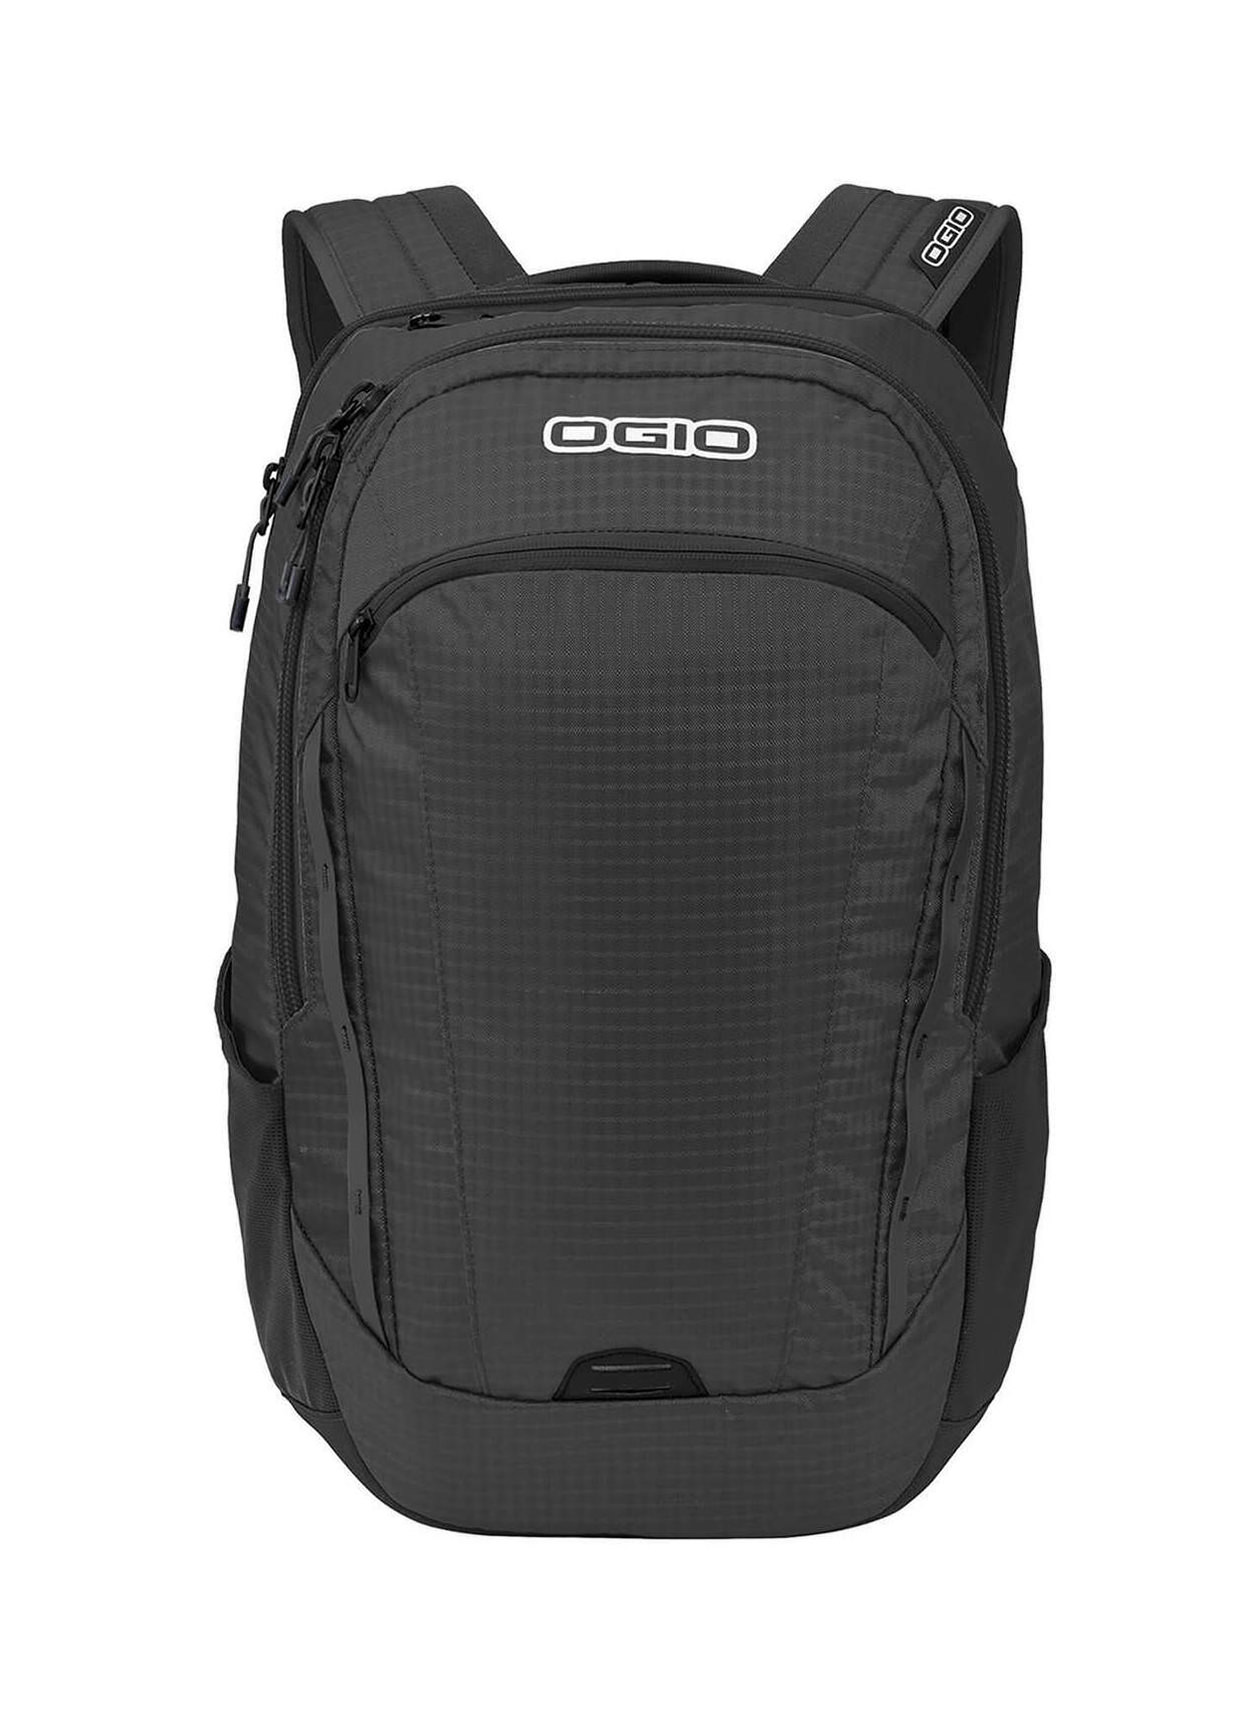 OGIO Black Shuttle Backpack